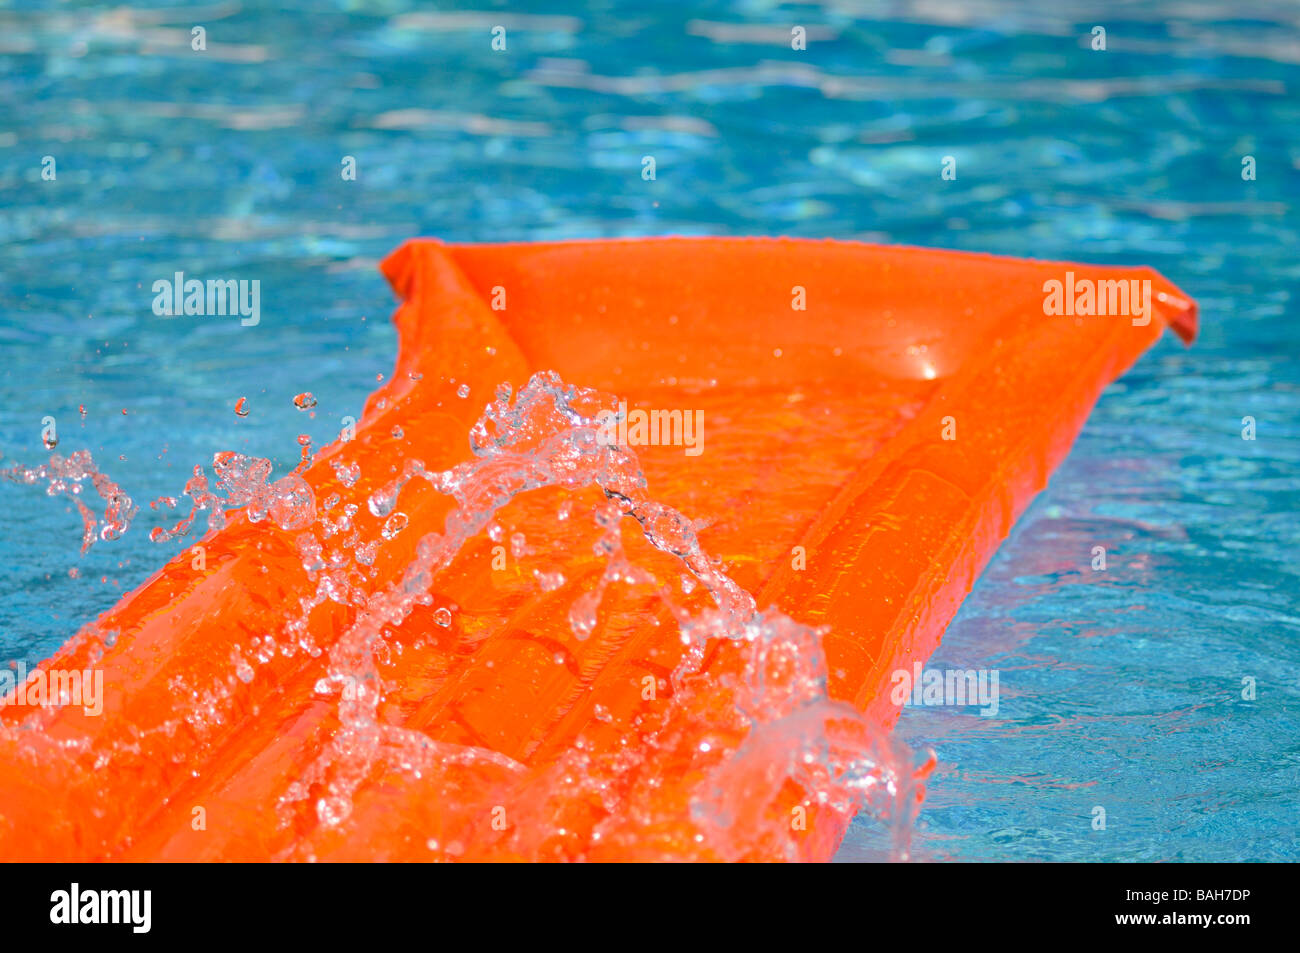 Spritzwasser über eine orange Luftmatratze schwimmend in einem Schwimmbad. Stockfoto